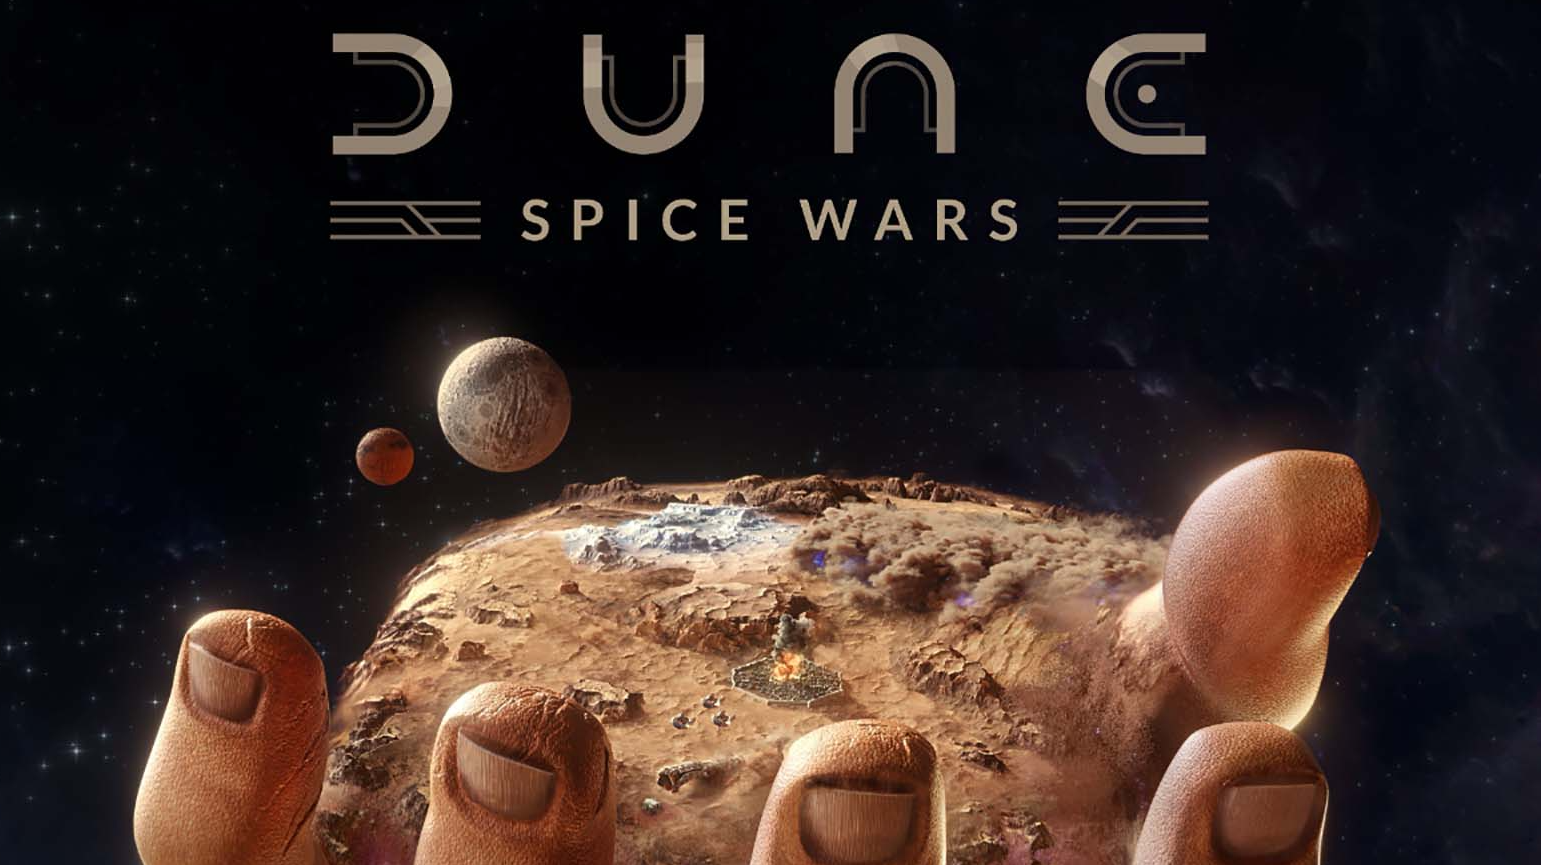 Immagine di Dune Spice Wars, lanciata la roadmap che prevede modalità multiplayer e una nuova fazione